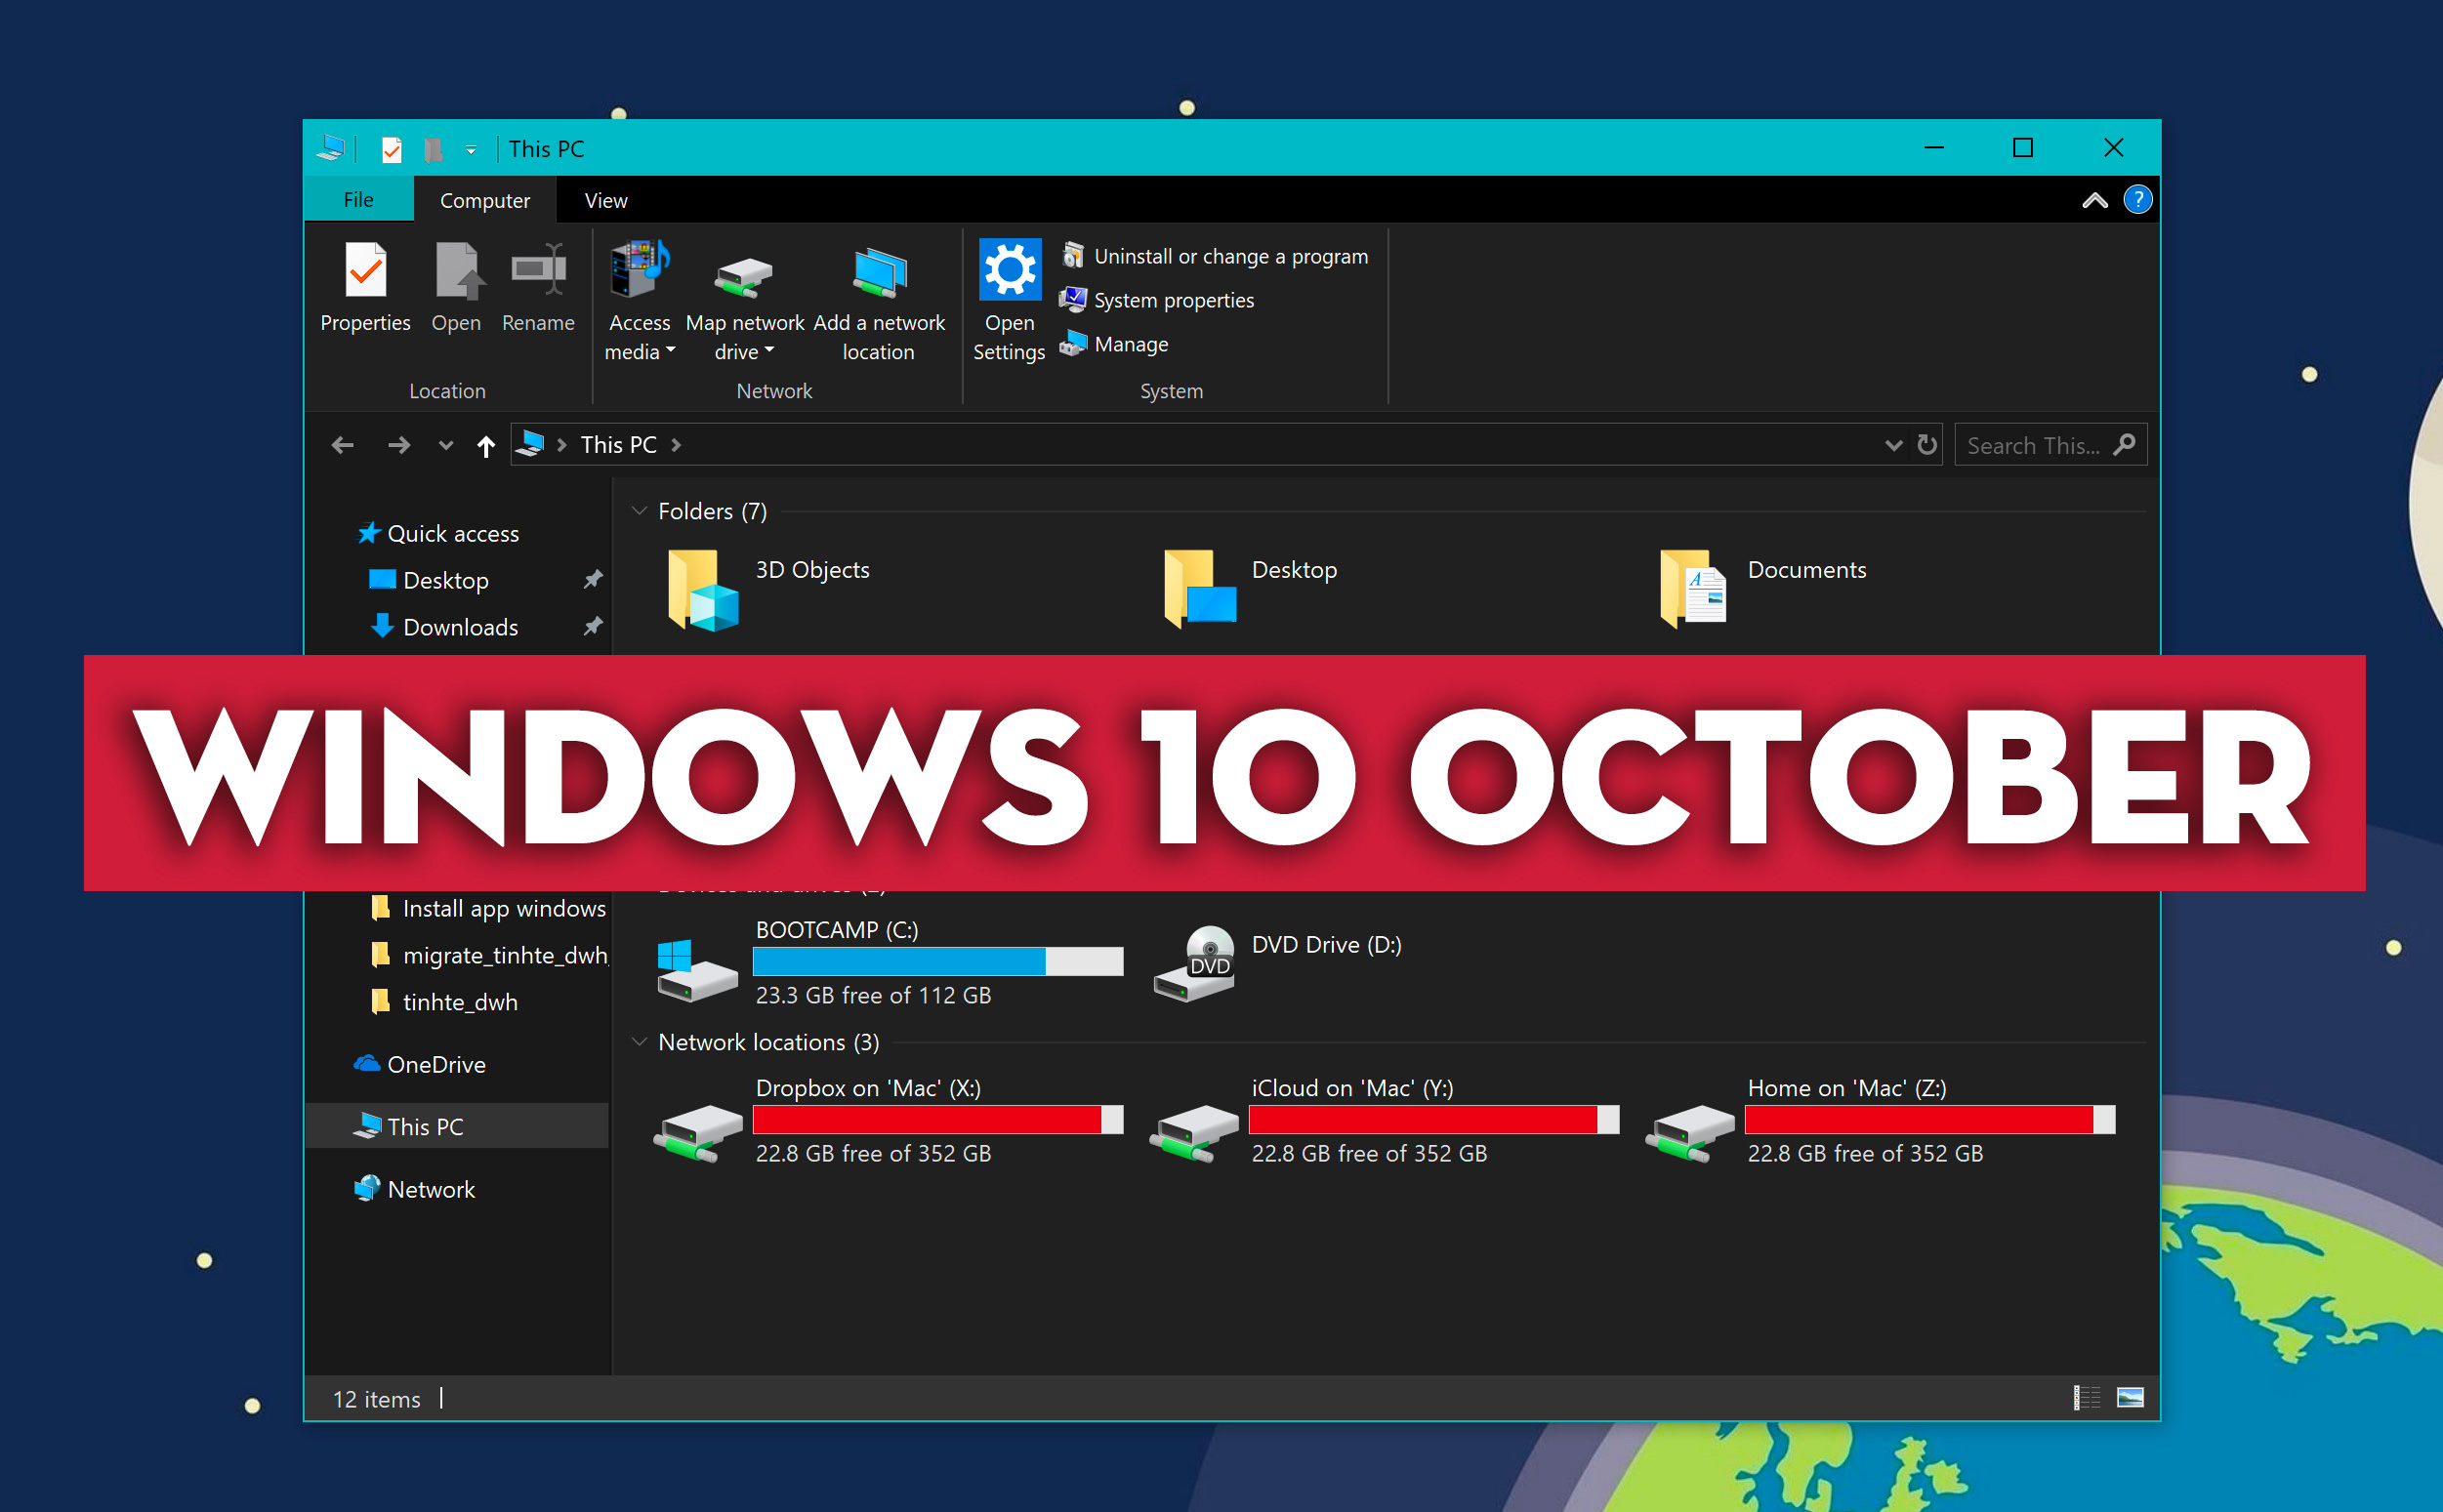 TOP 5 tính năng hay nhất của Windows 10 October, anh em thích cái nào nhất?